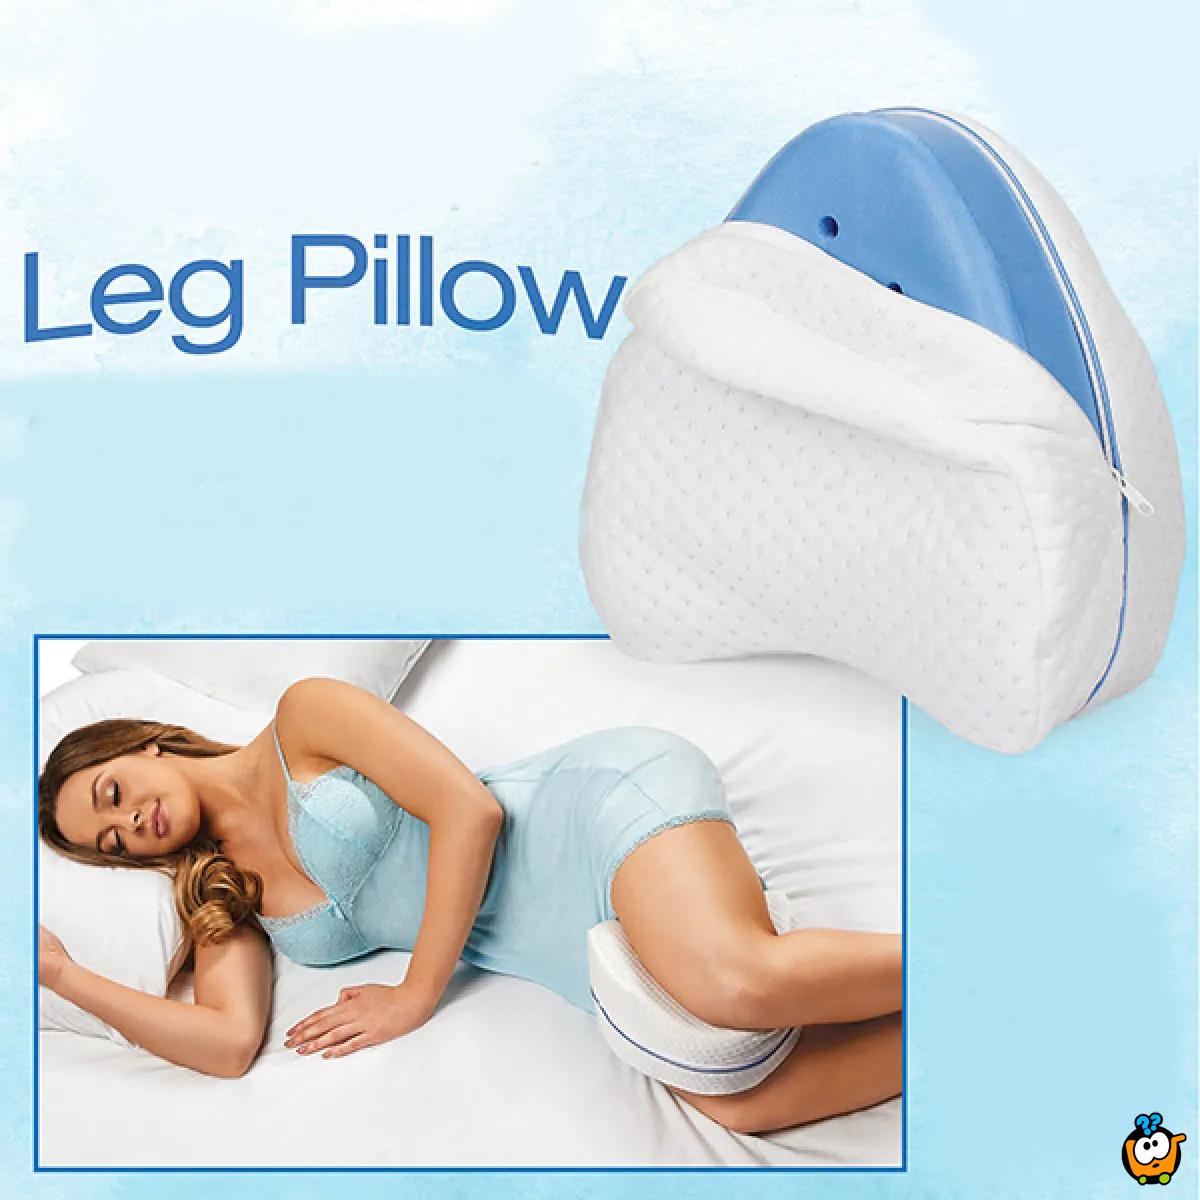 Leg Pillow - Memory jastuk za noge od memorijske pene